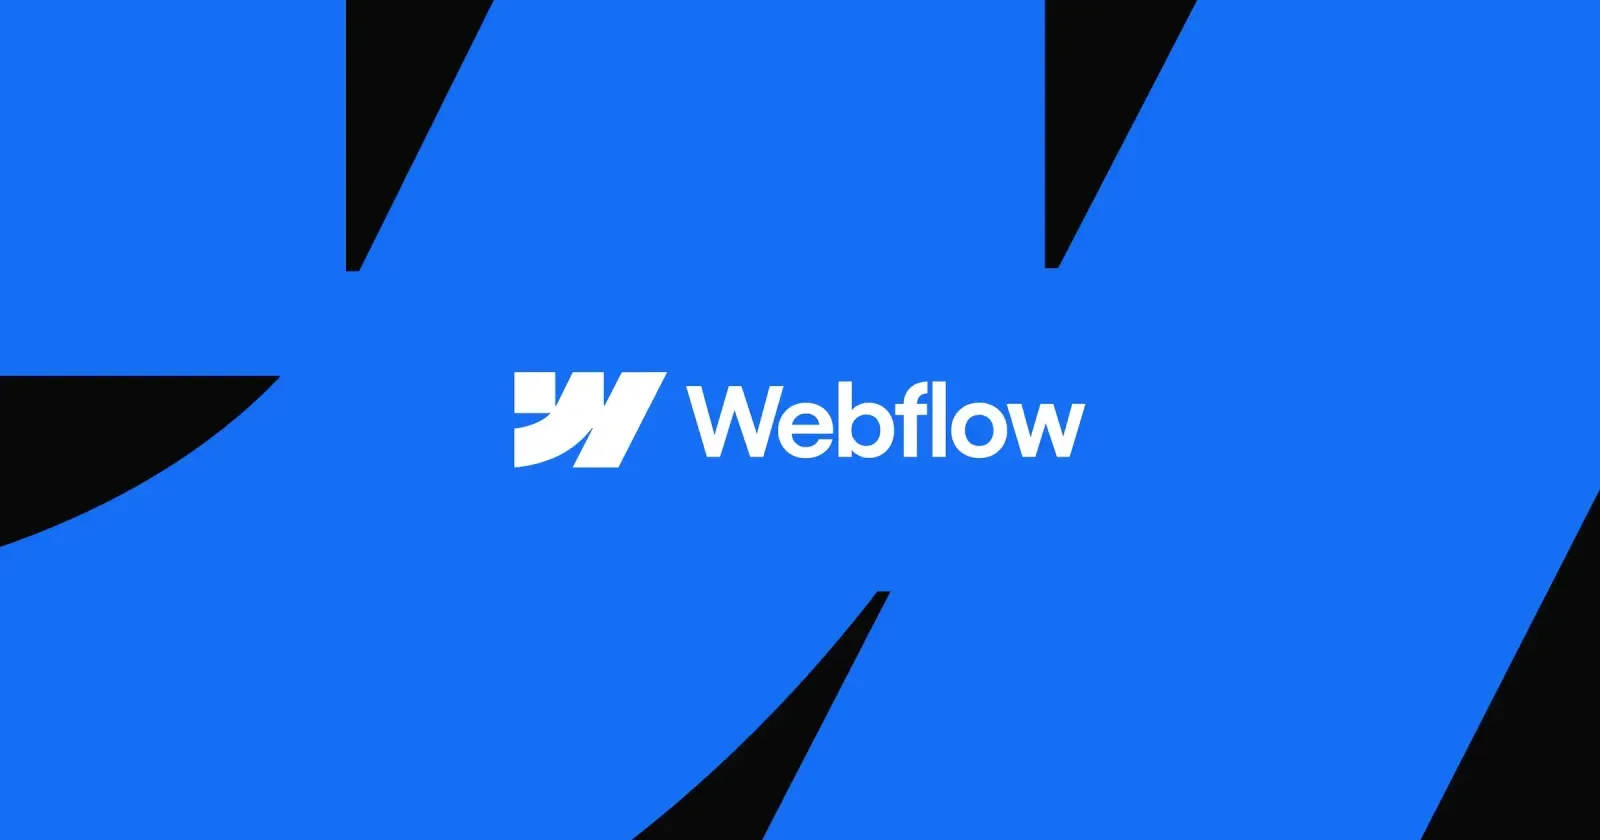 Webflow arendus Avaleht Webflow arendus on uuenduslik lähenemine veebisaitide loomisele, mis ühendab endas disaini paindlikkuse ja koodita platvormi võimsuse. S